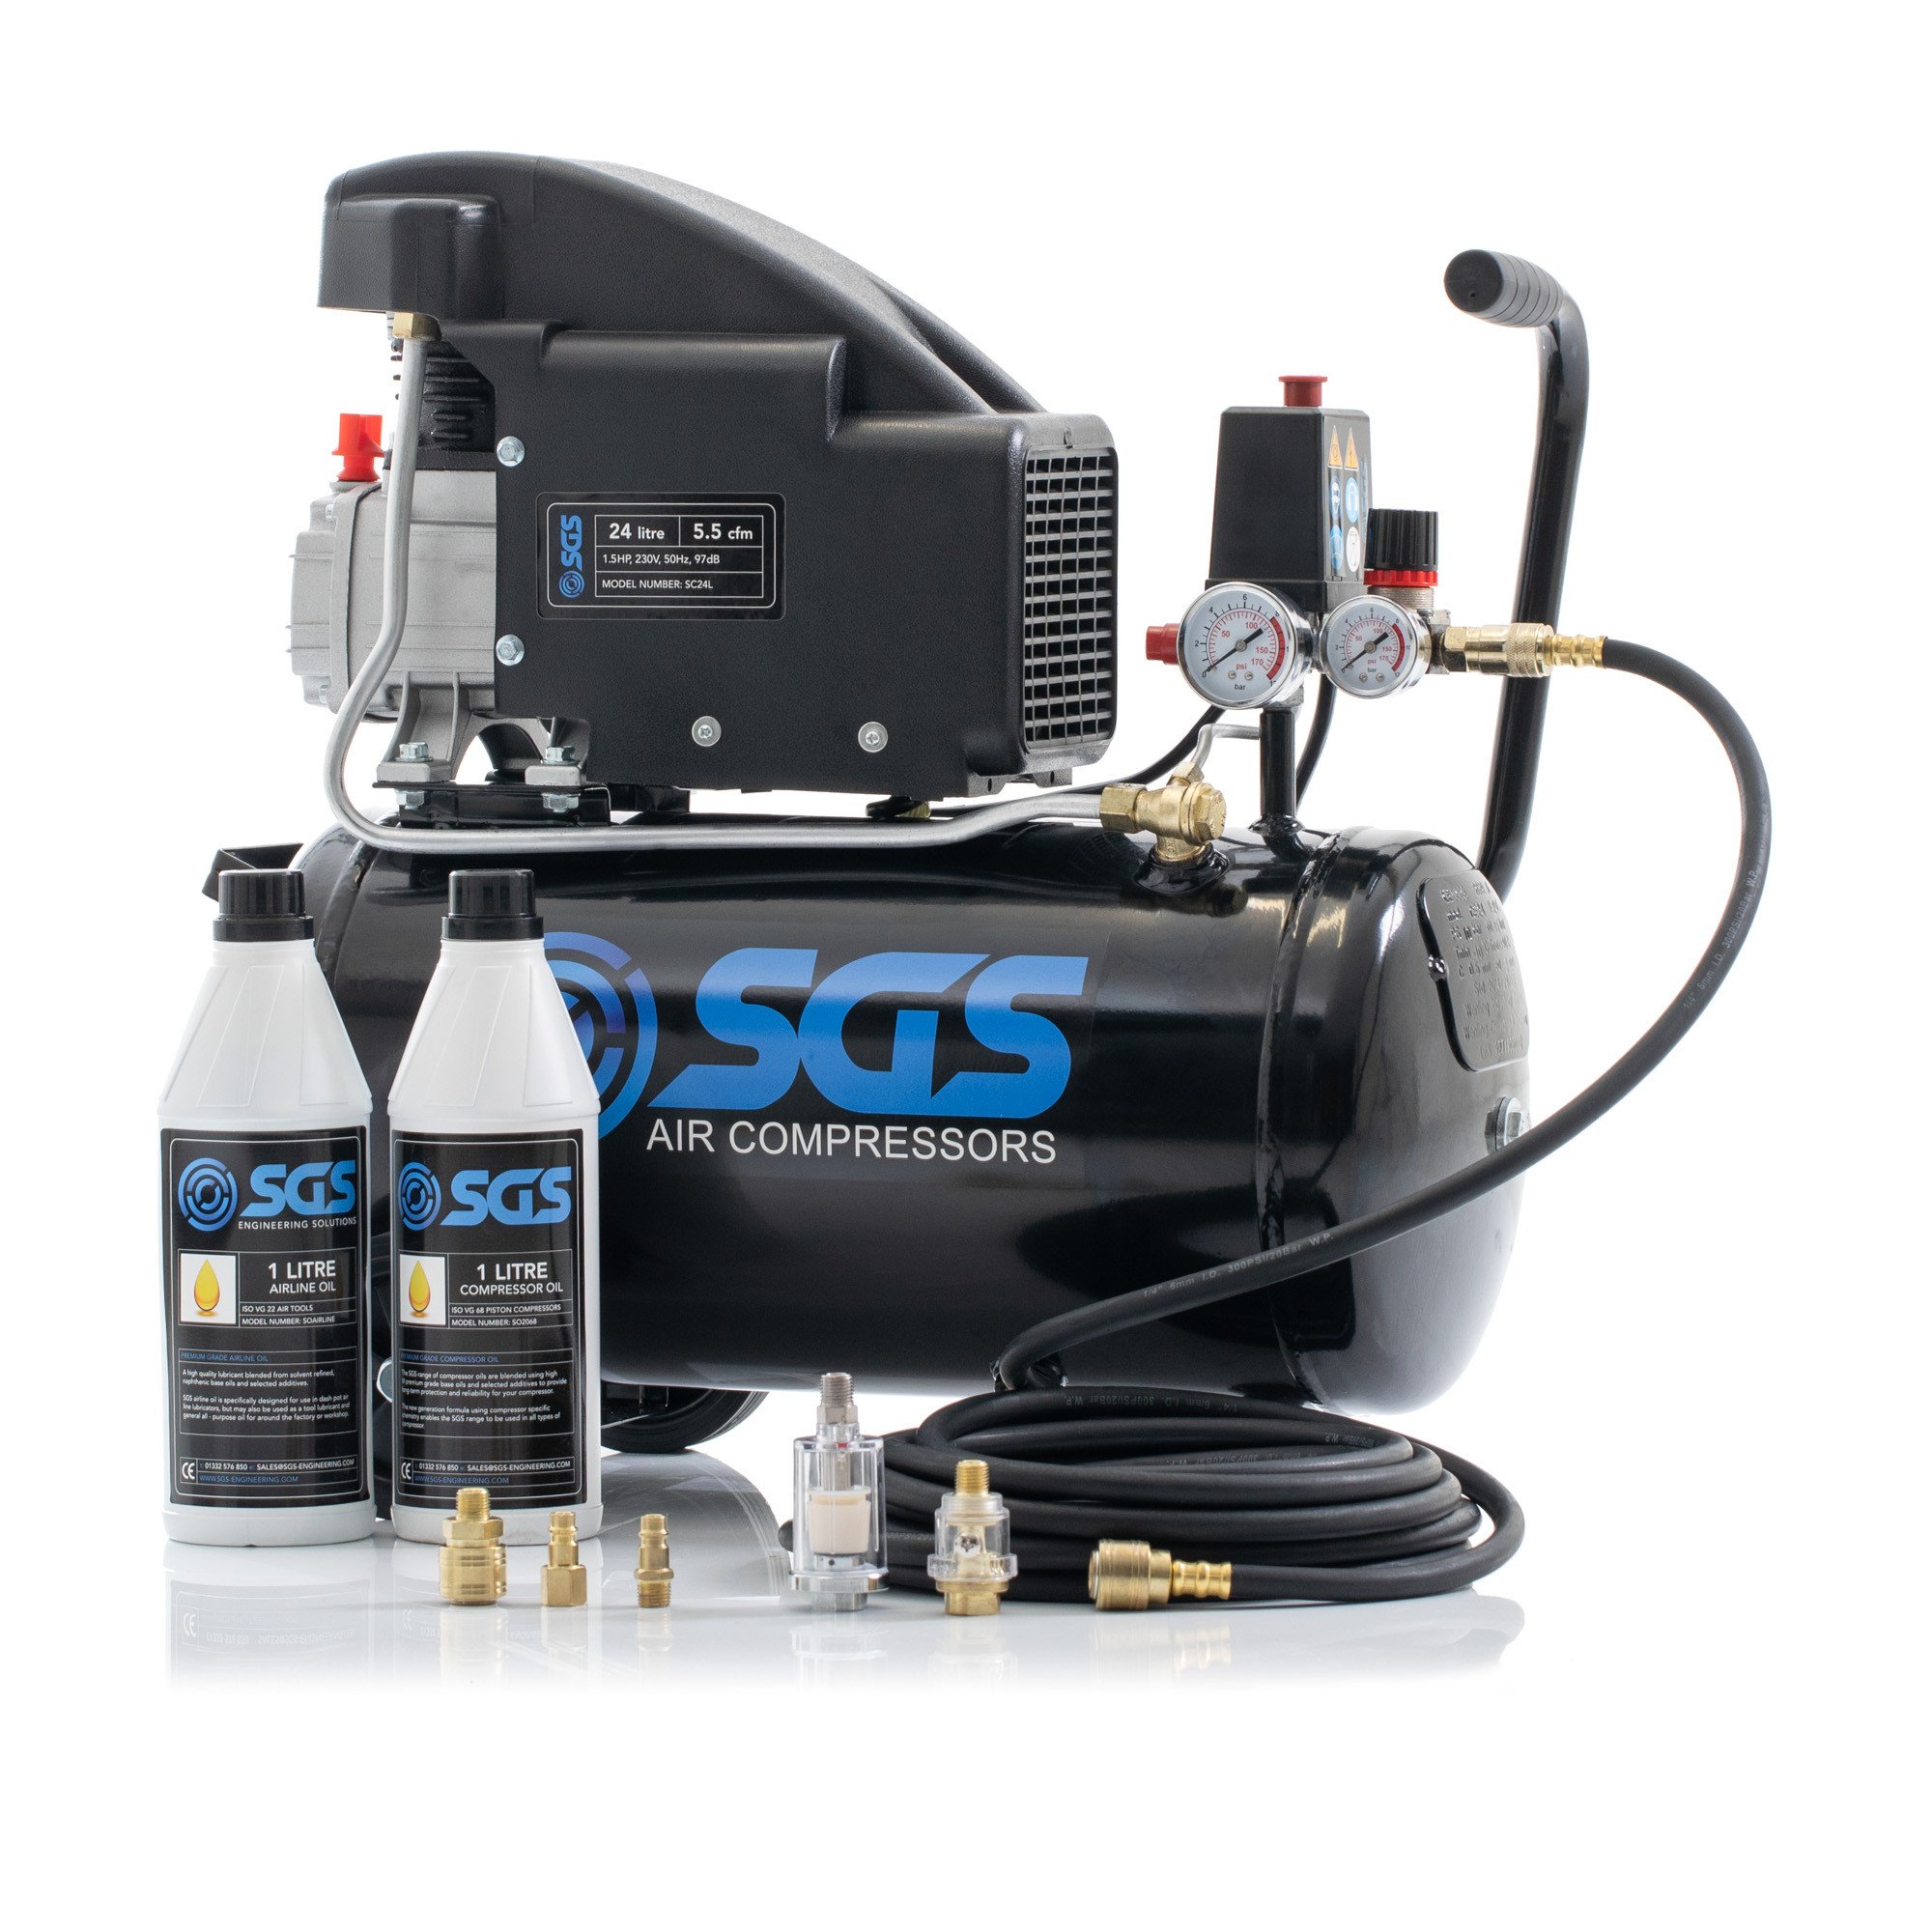 SGS 24升直接驱动空气压缩机和入门套件-5.5 CFM，1.5 hp